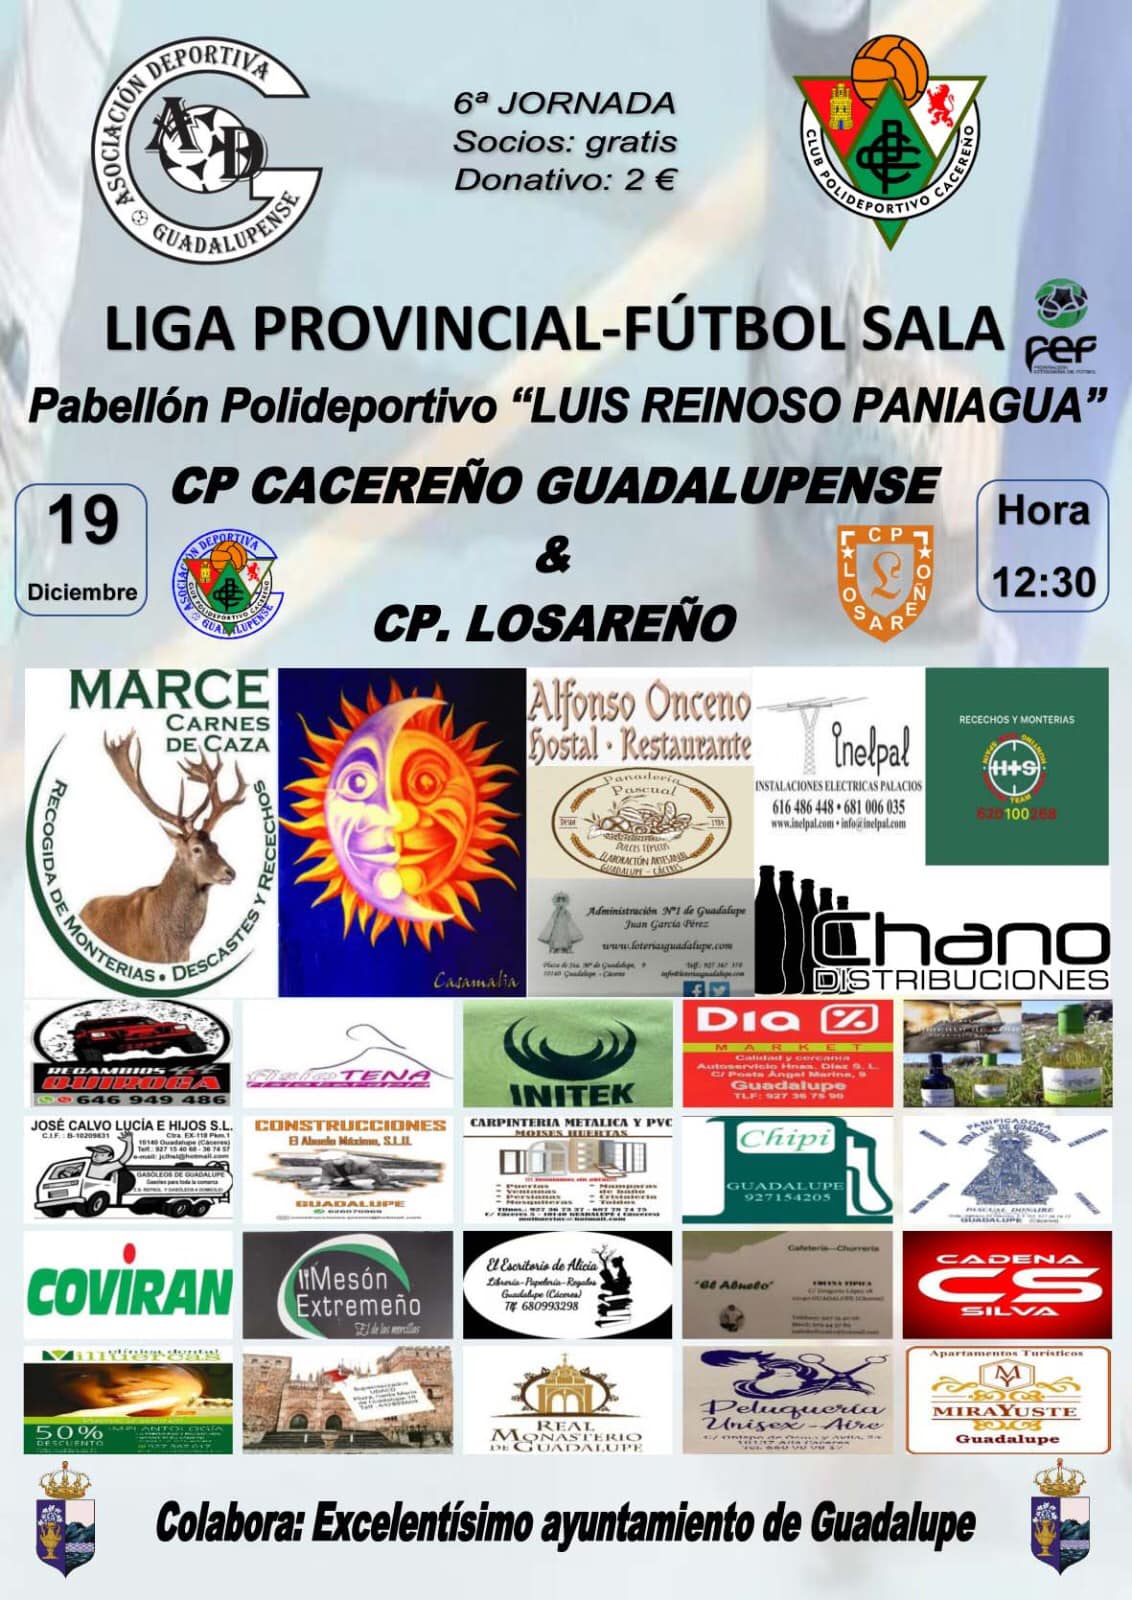 CP Cacereño Guadalupense - CP Losareño (diciembre 2021) - Guadalupe (Cáceres)